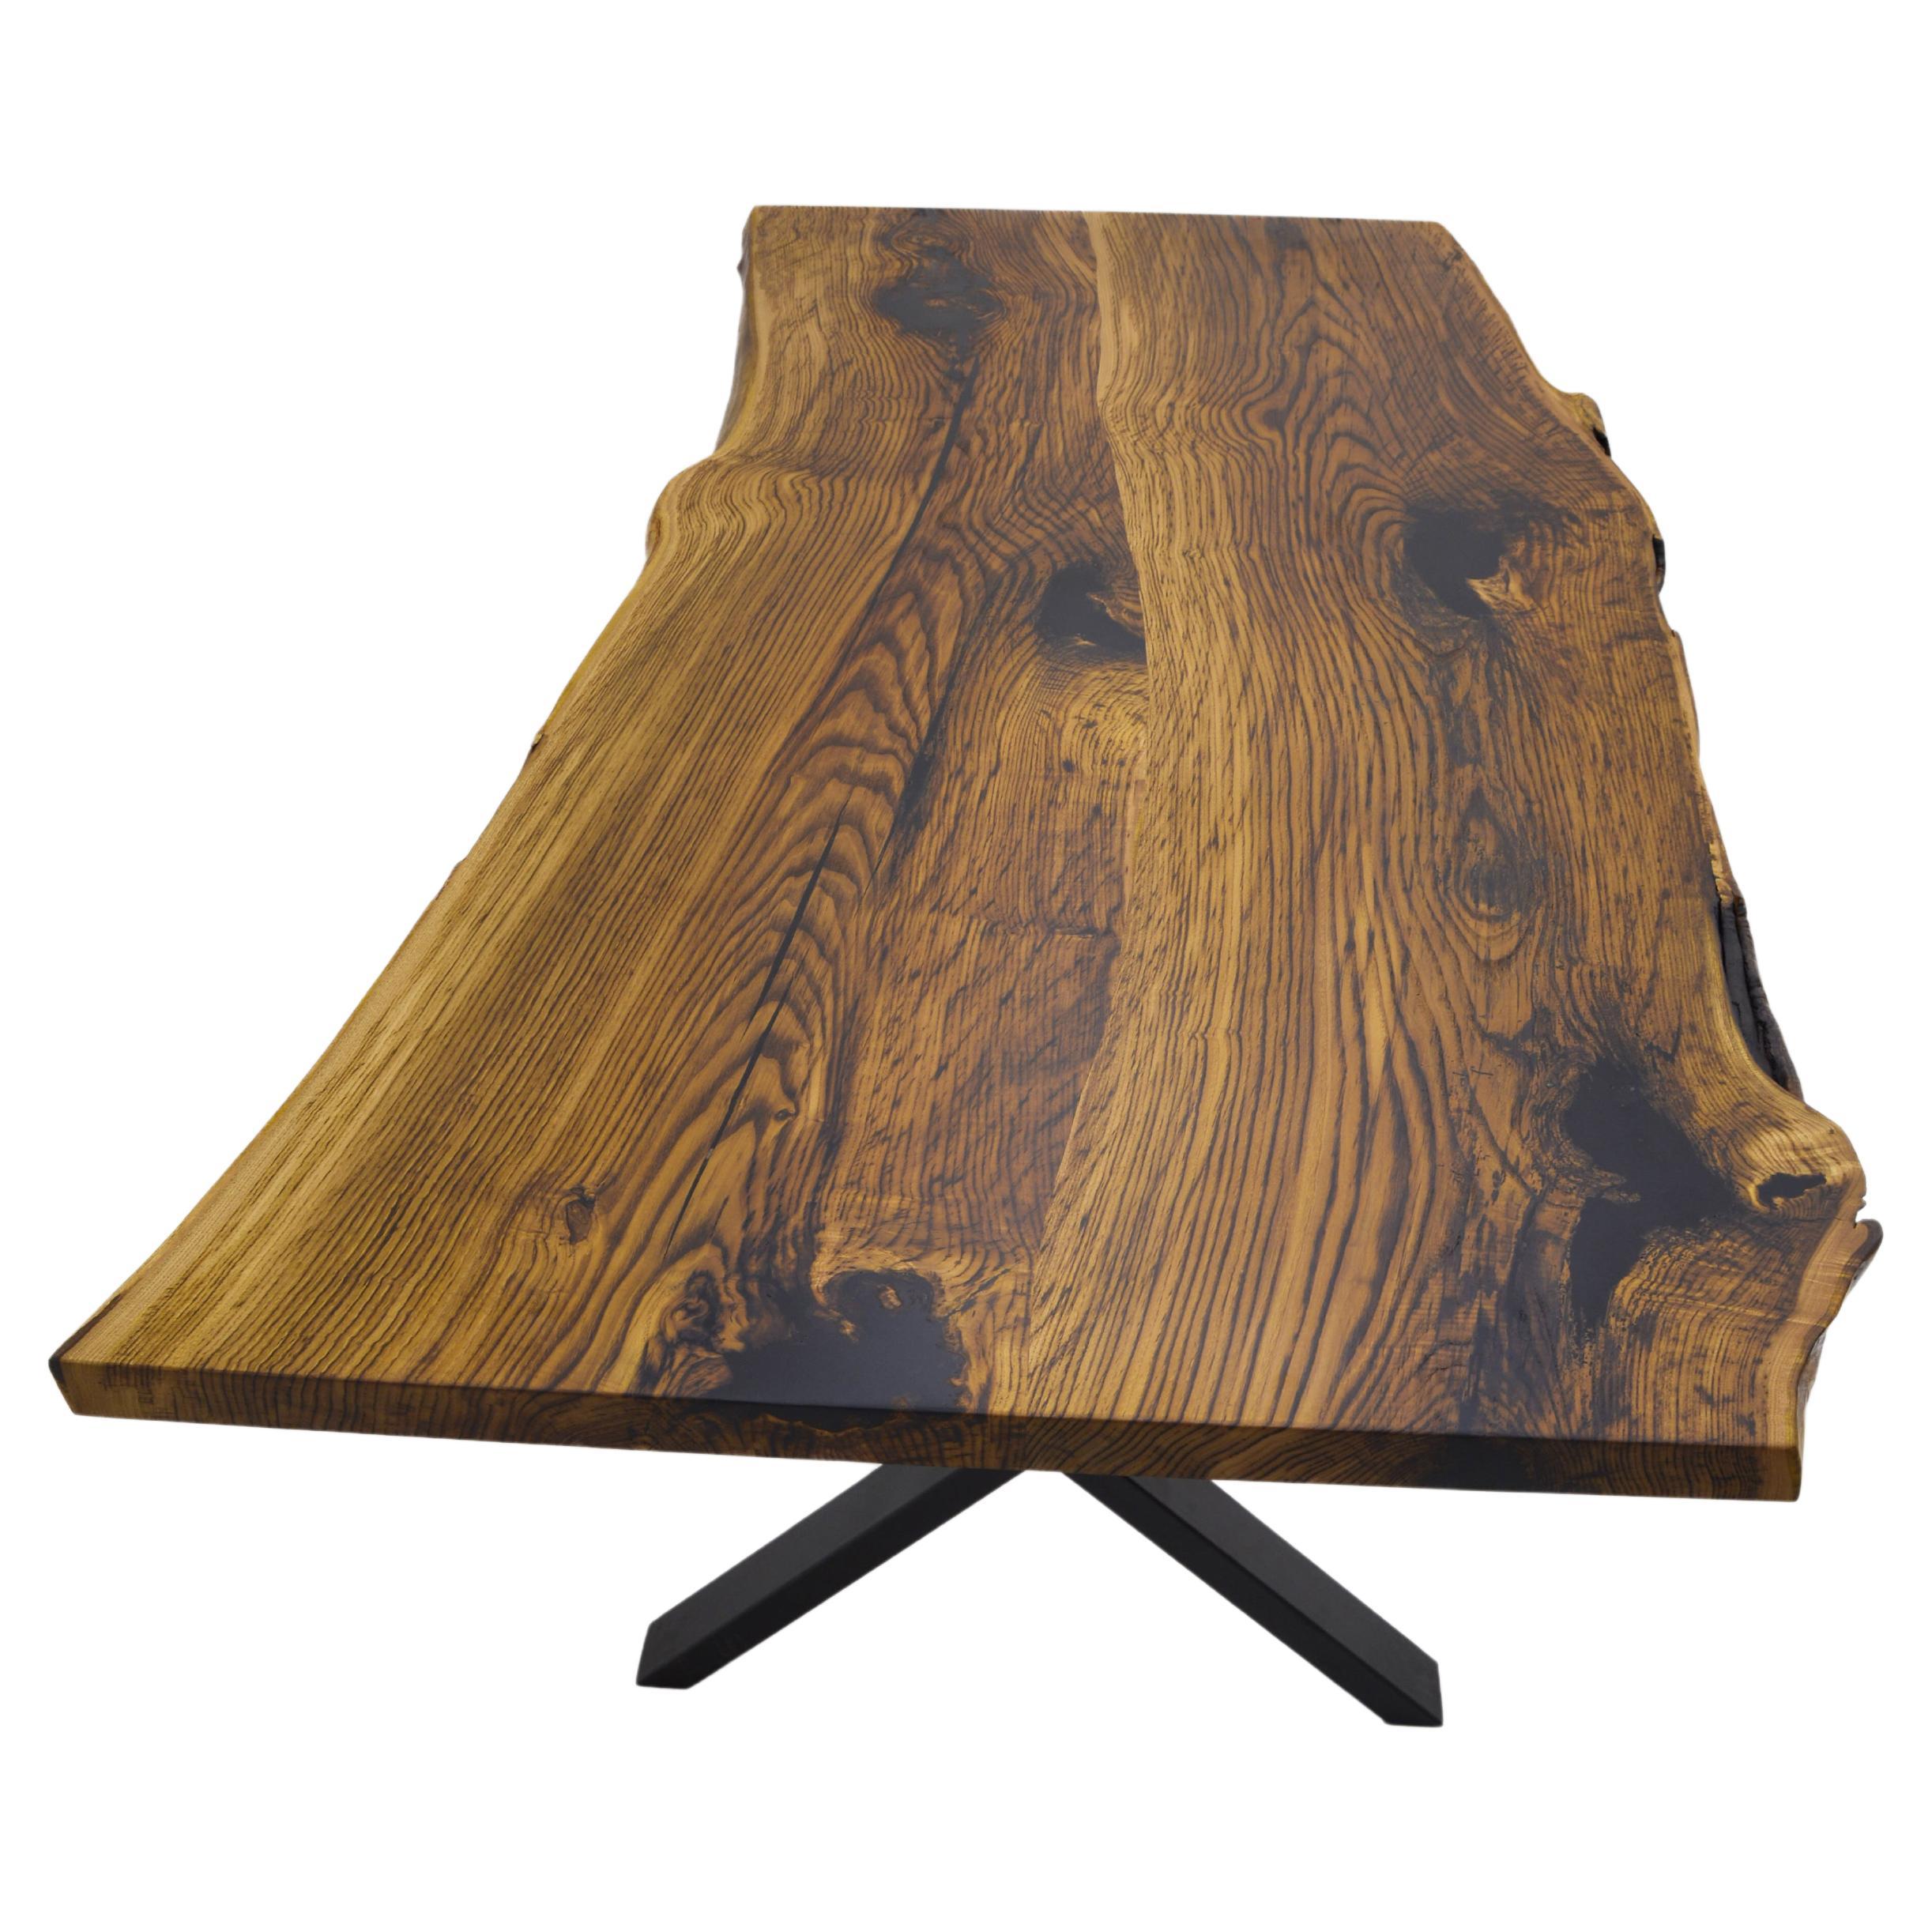 Table de cuisine sur mesure en bois massif de châtaignier